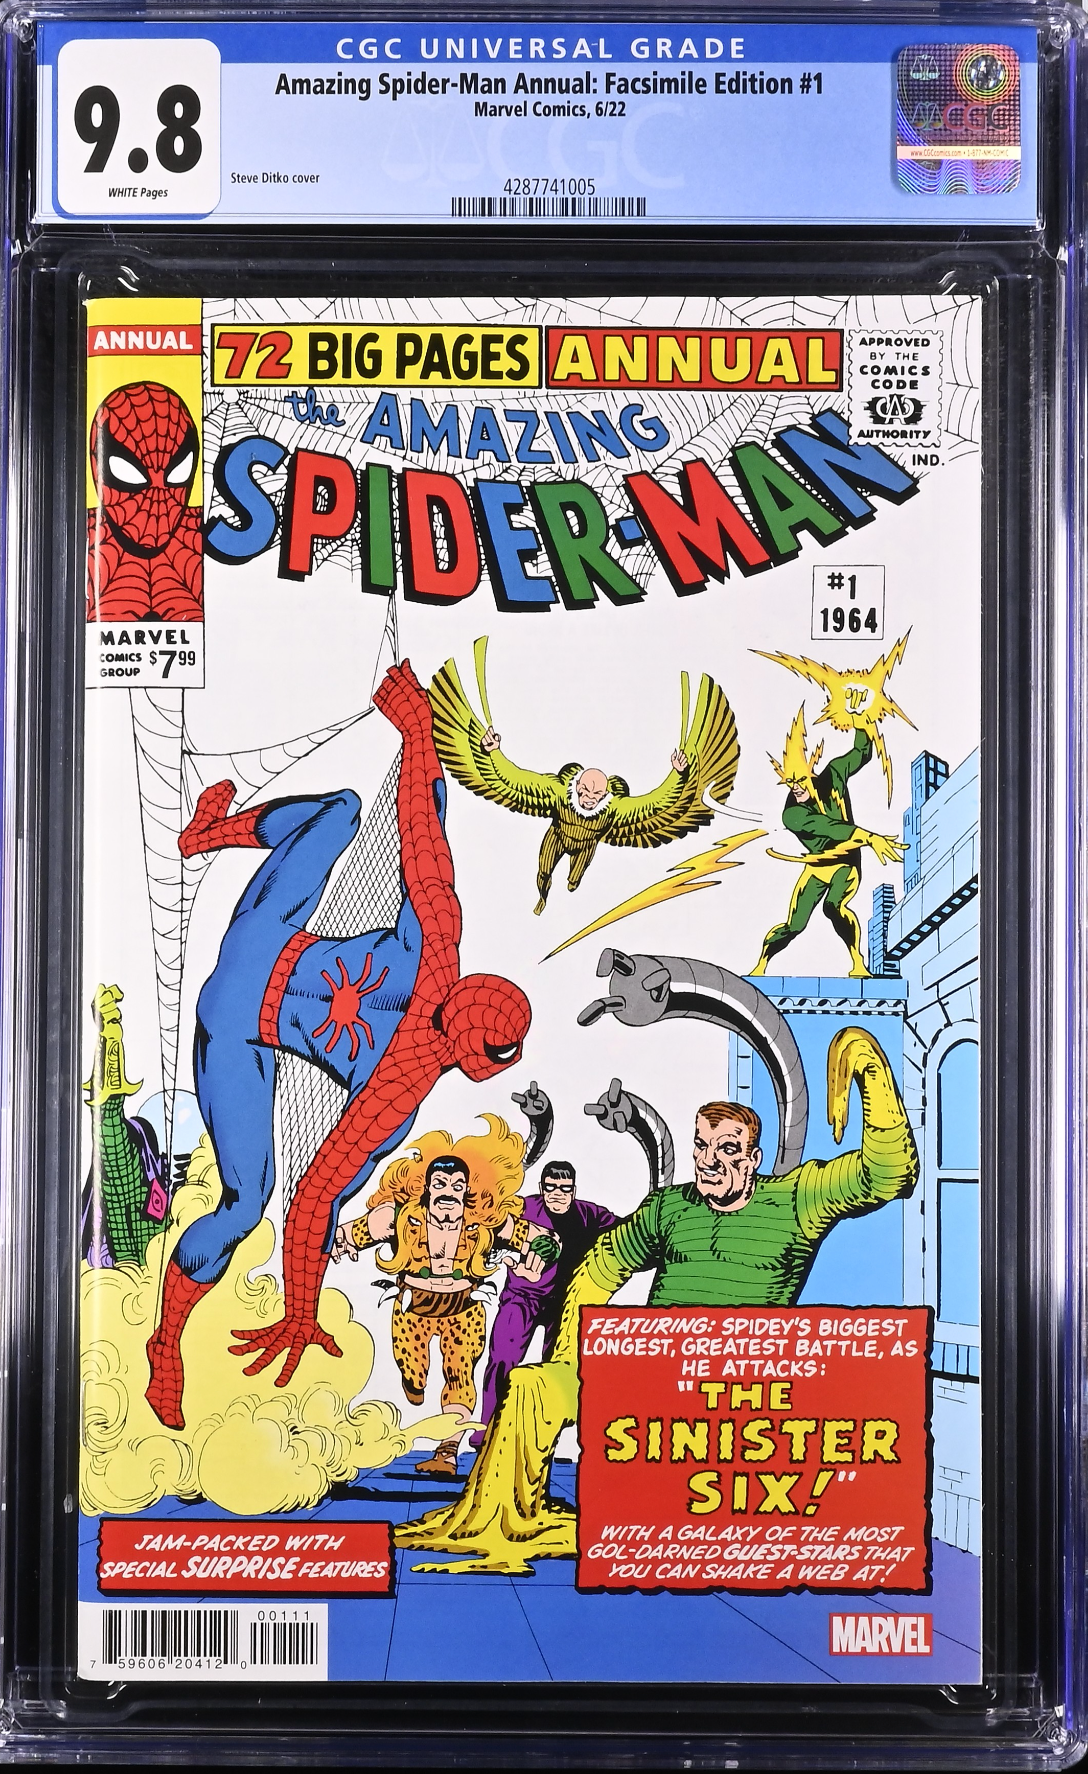 Amazing Spider-Man Annual Facsimile Edition #1 CGC 9.8